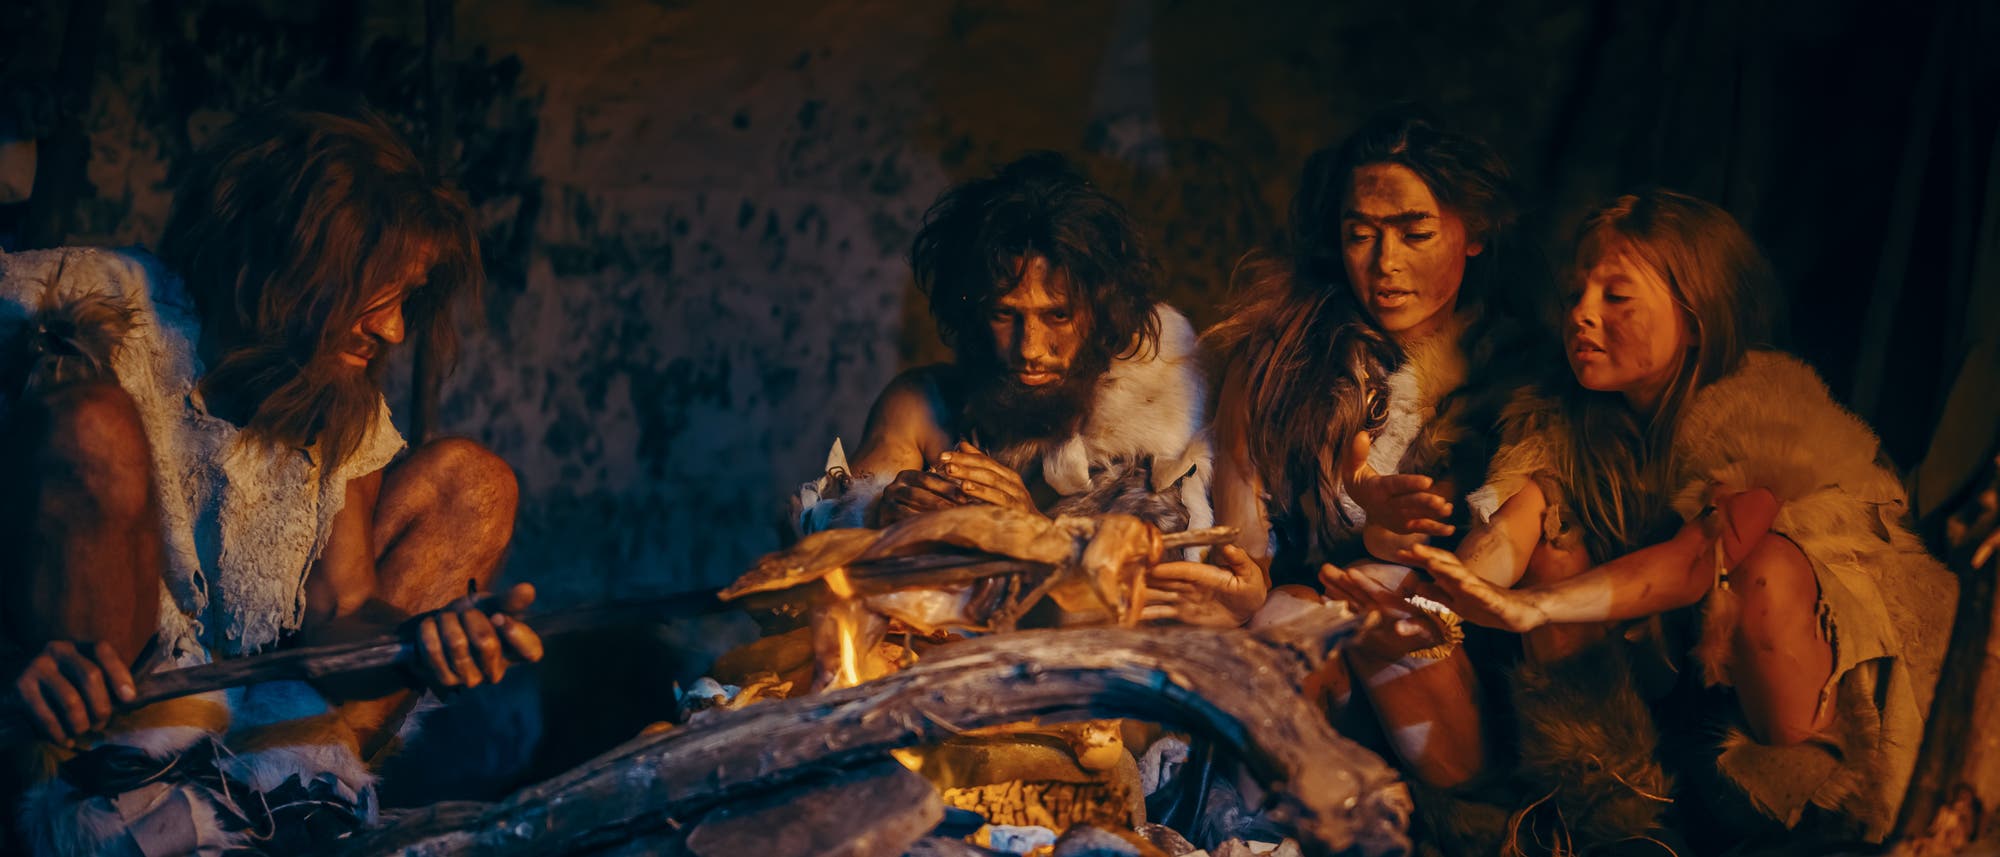 Prähistorische Jäger und Sammler tragen Tierhäute und essen Fleisch in einer Höhle in der Nacht